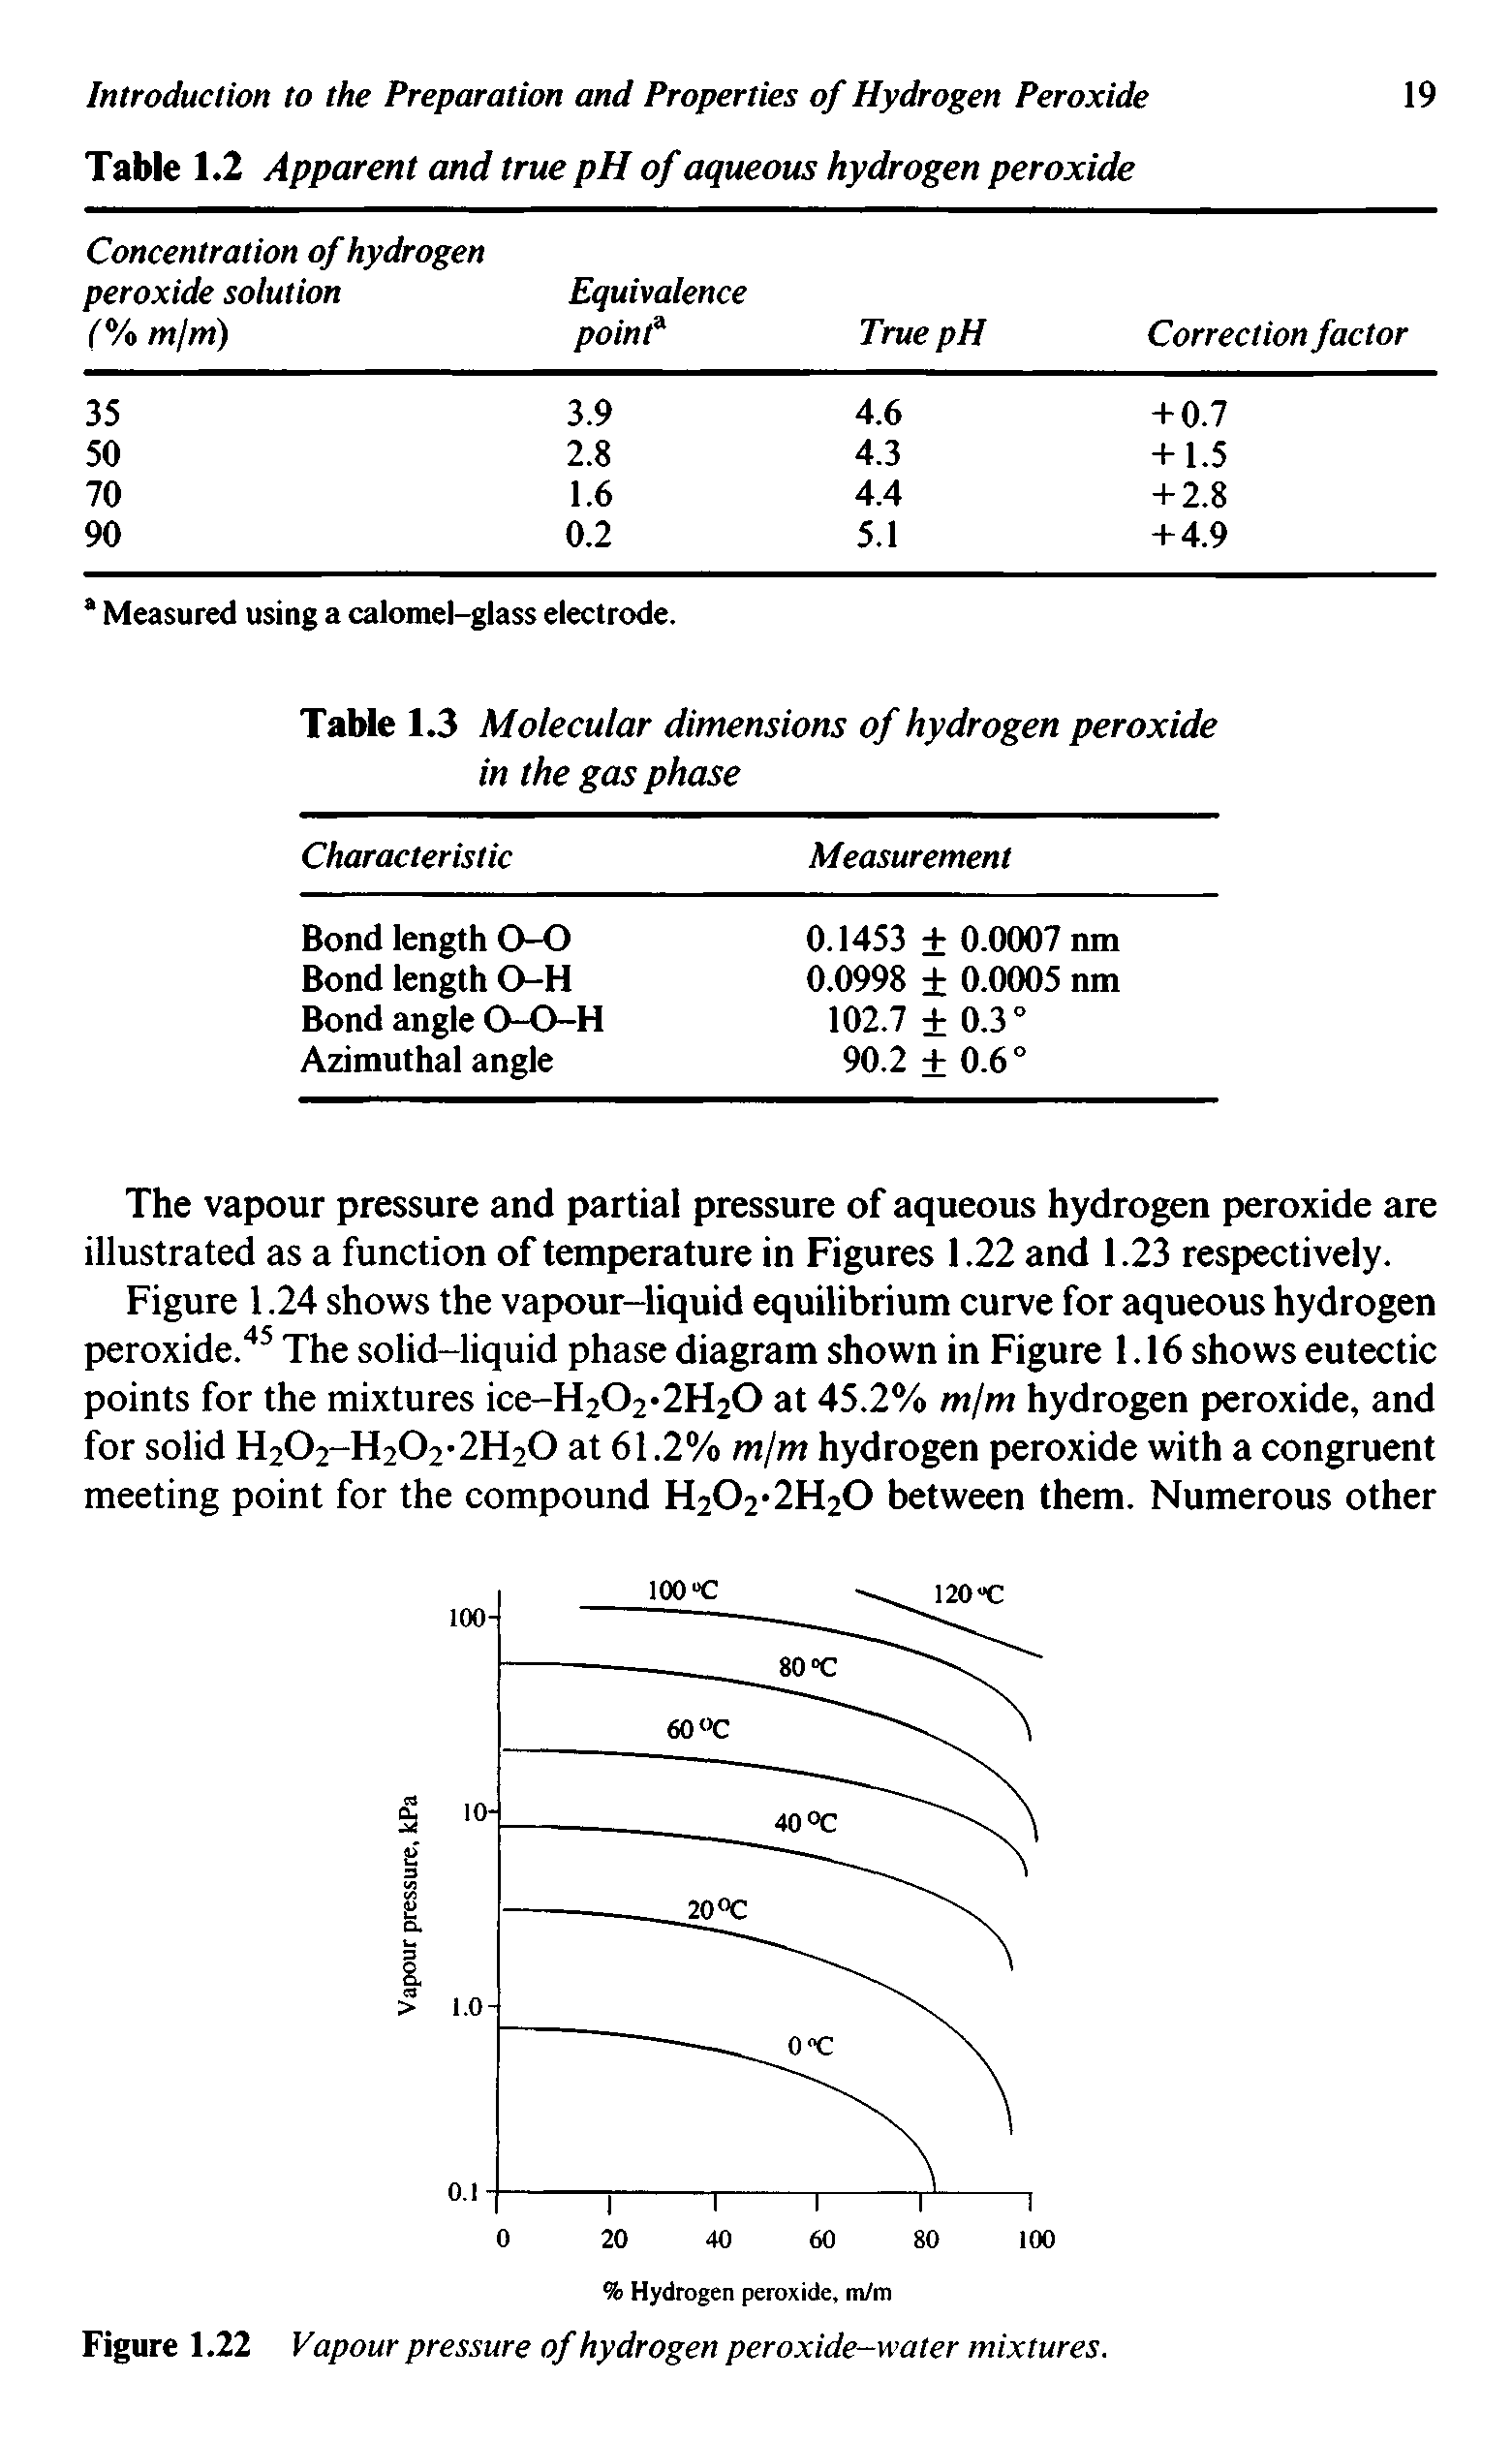 Figure 1.22 Vapour pressure of hydrogen peroxide-water mixtures.